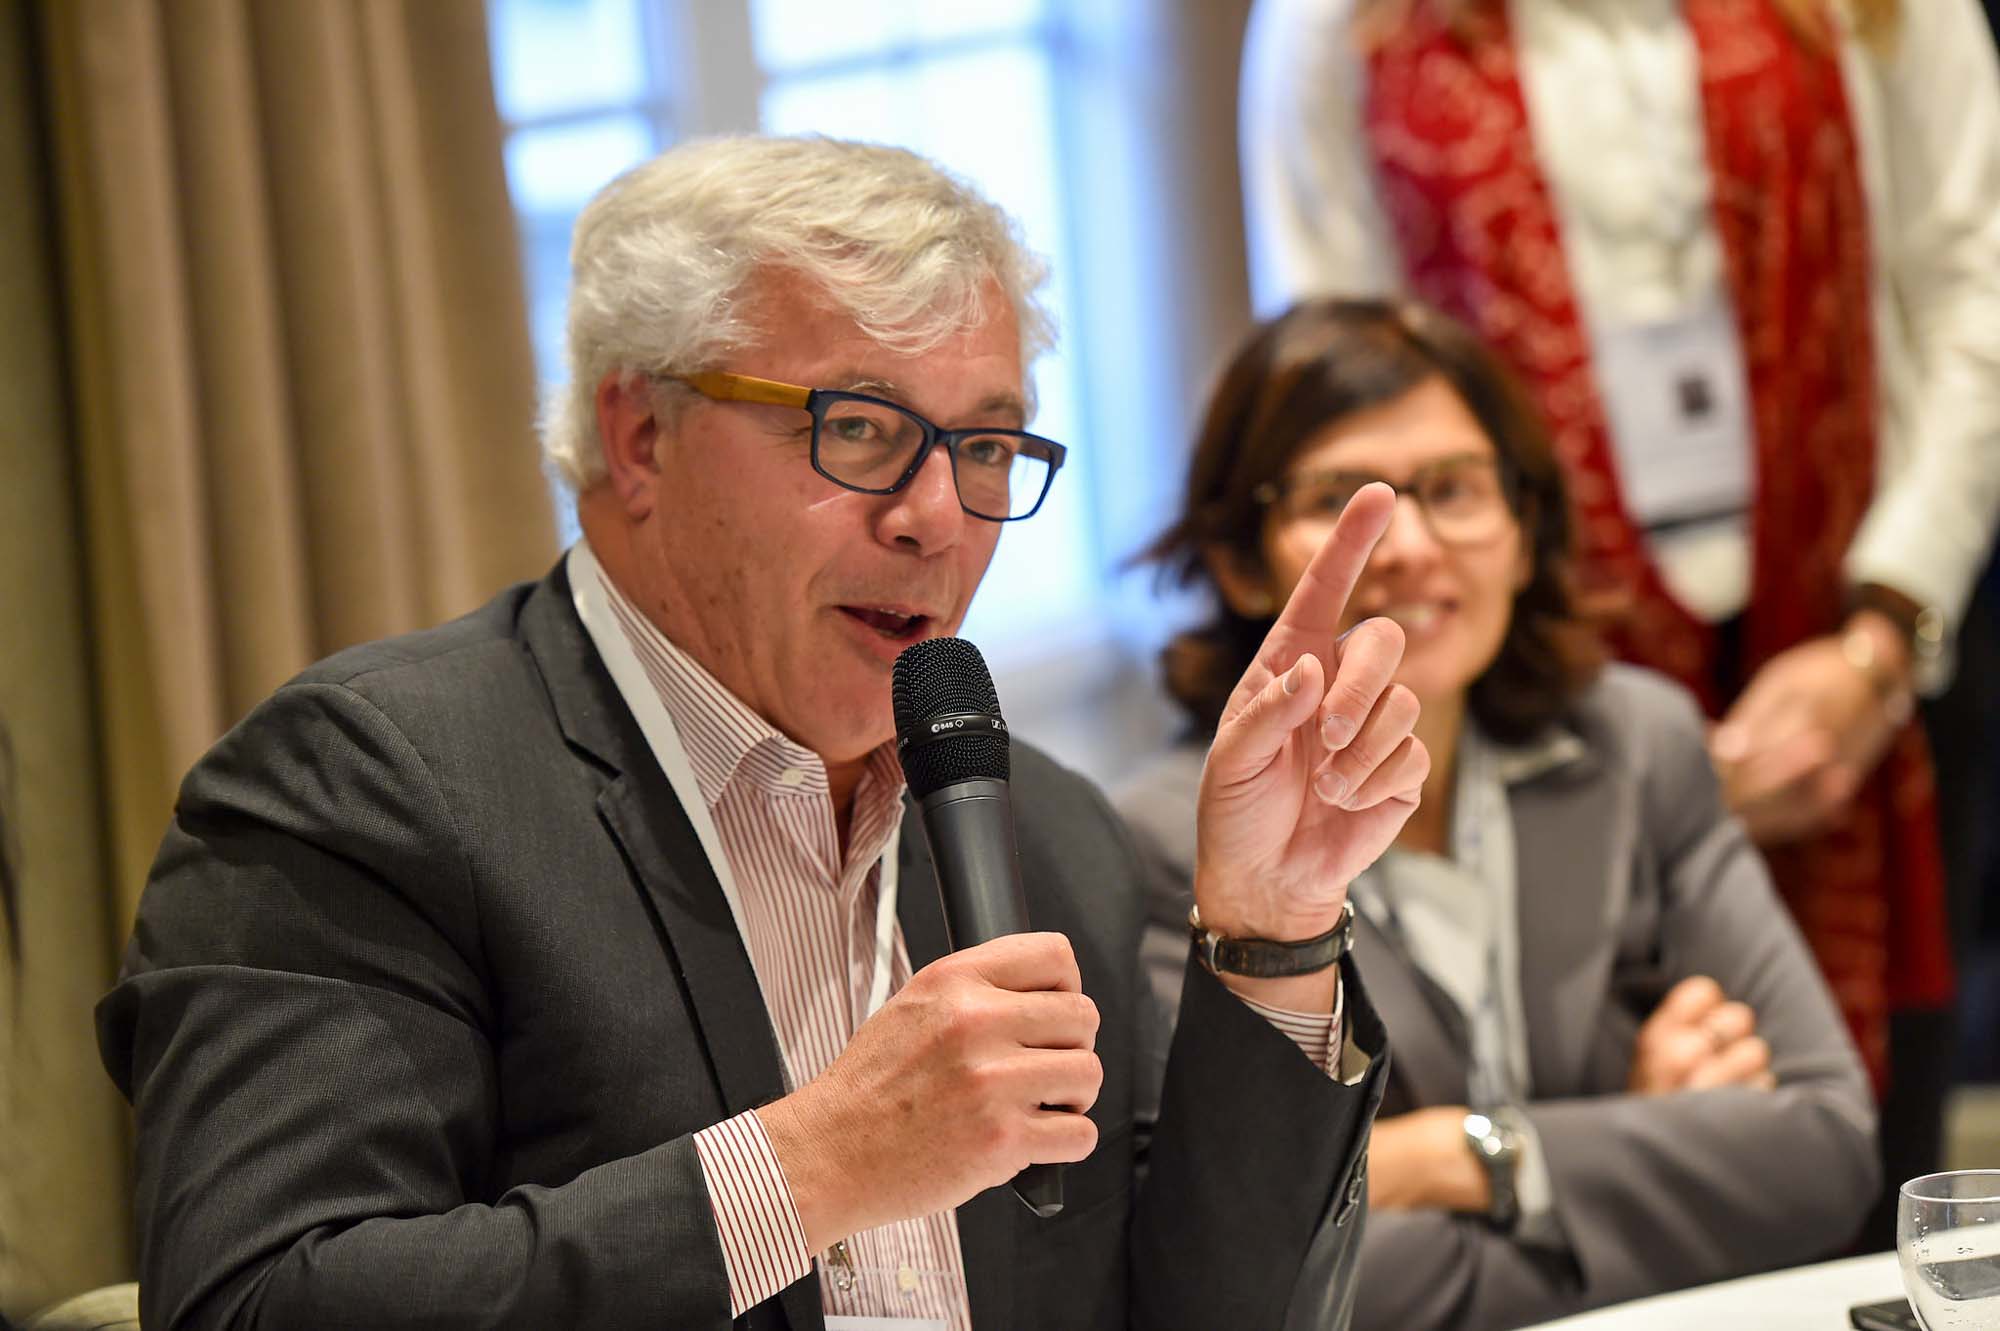 Olivier Fleurot Senoir Vice President de Publcis Groupe voque la place des femmes dans l'entreprise